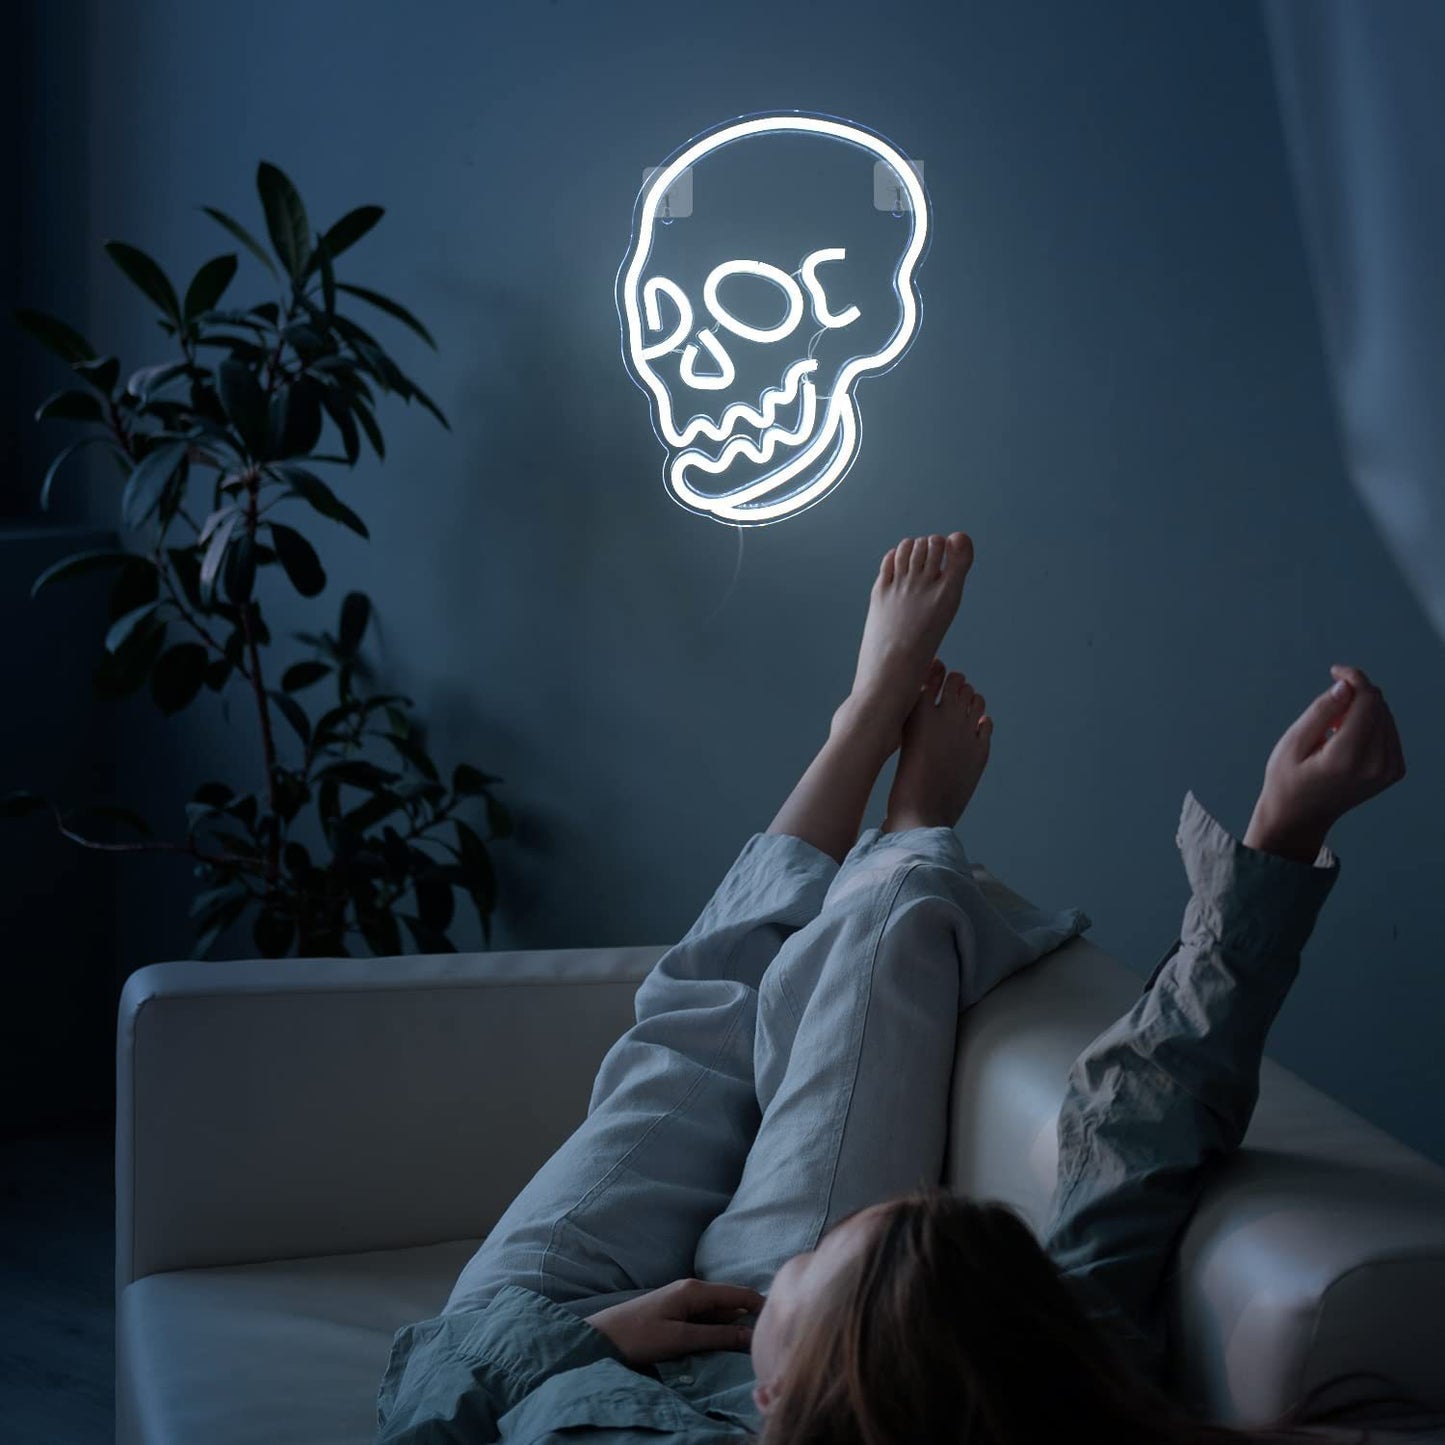 Halloween PVC  Skull  White Light  Neon Design Lights